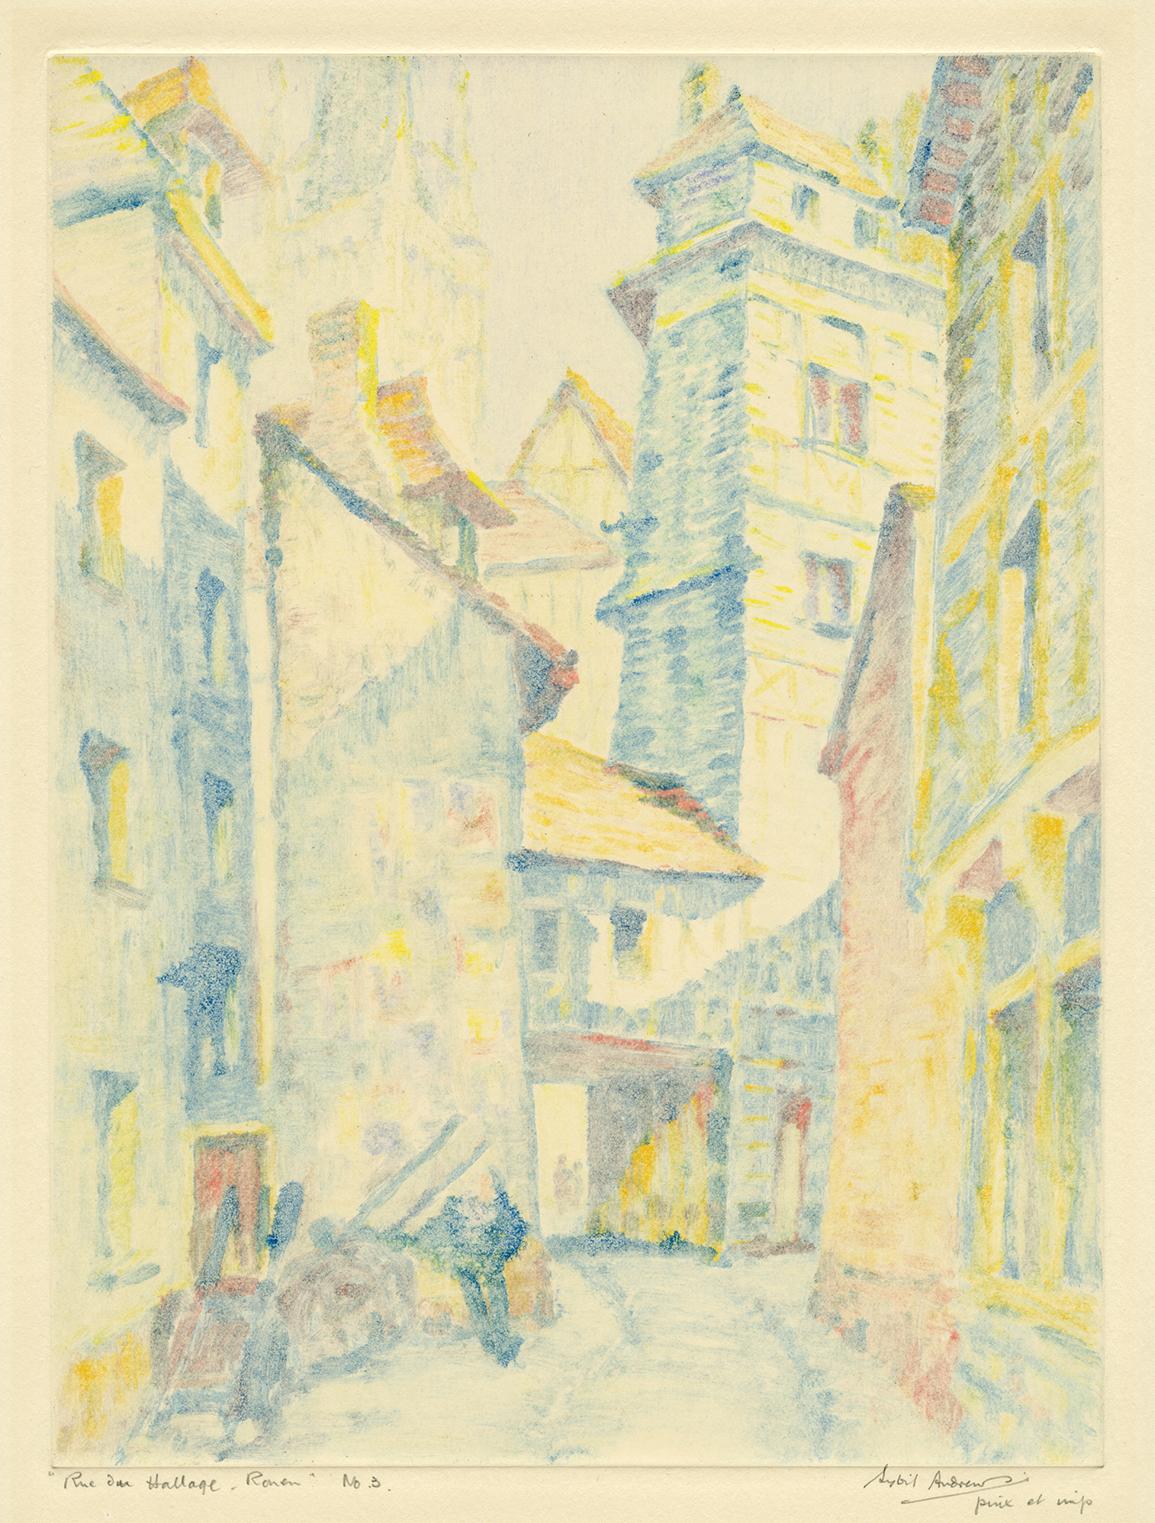 Sybil Andrews Figurative Print - 'Rue du Hallage - Rouen' — 1920s British Impressionism